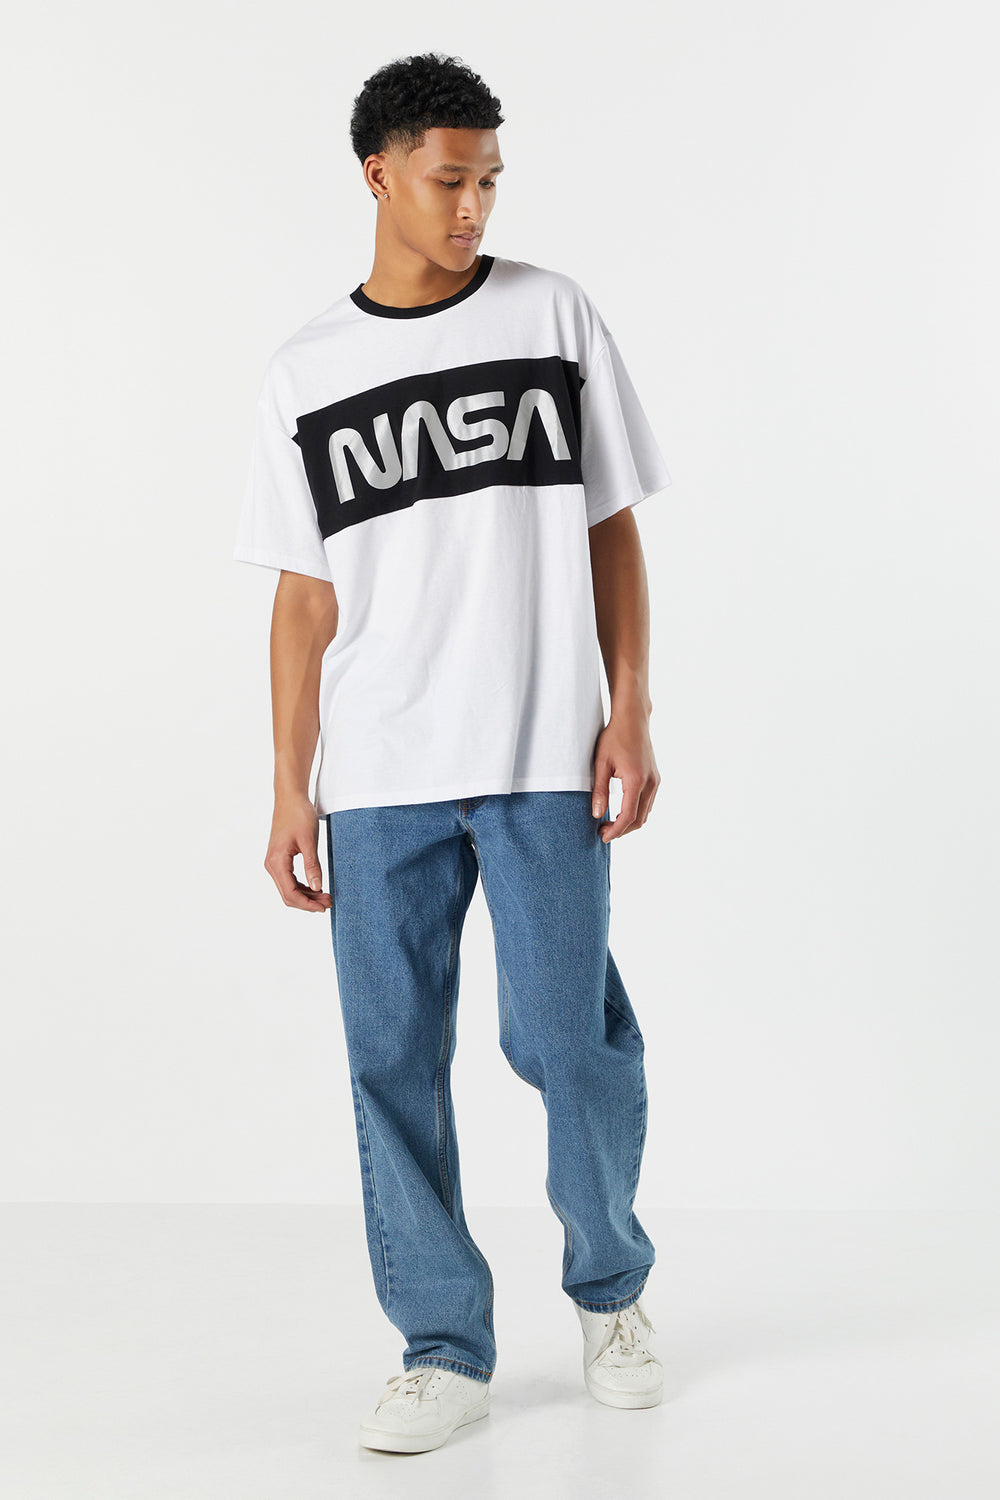 NASA Colourblock Graphic T-Shirt NASA Colourblock Graphic T-Shirt 7